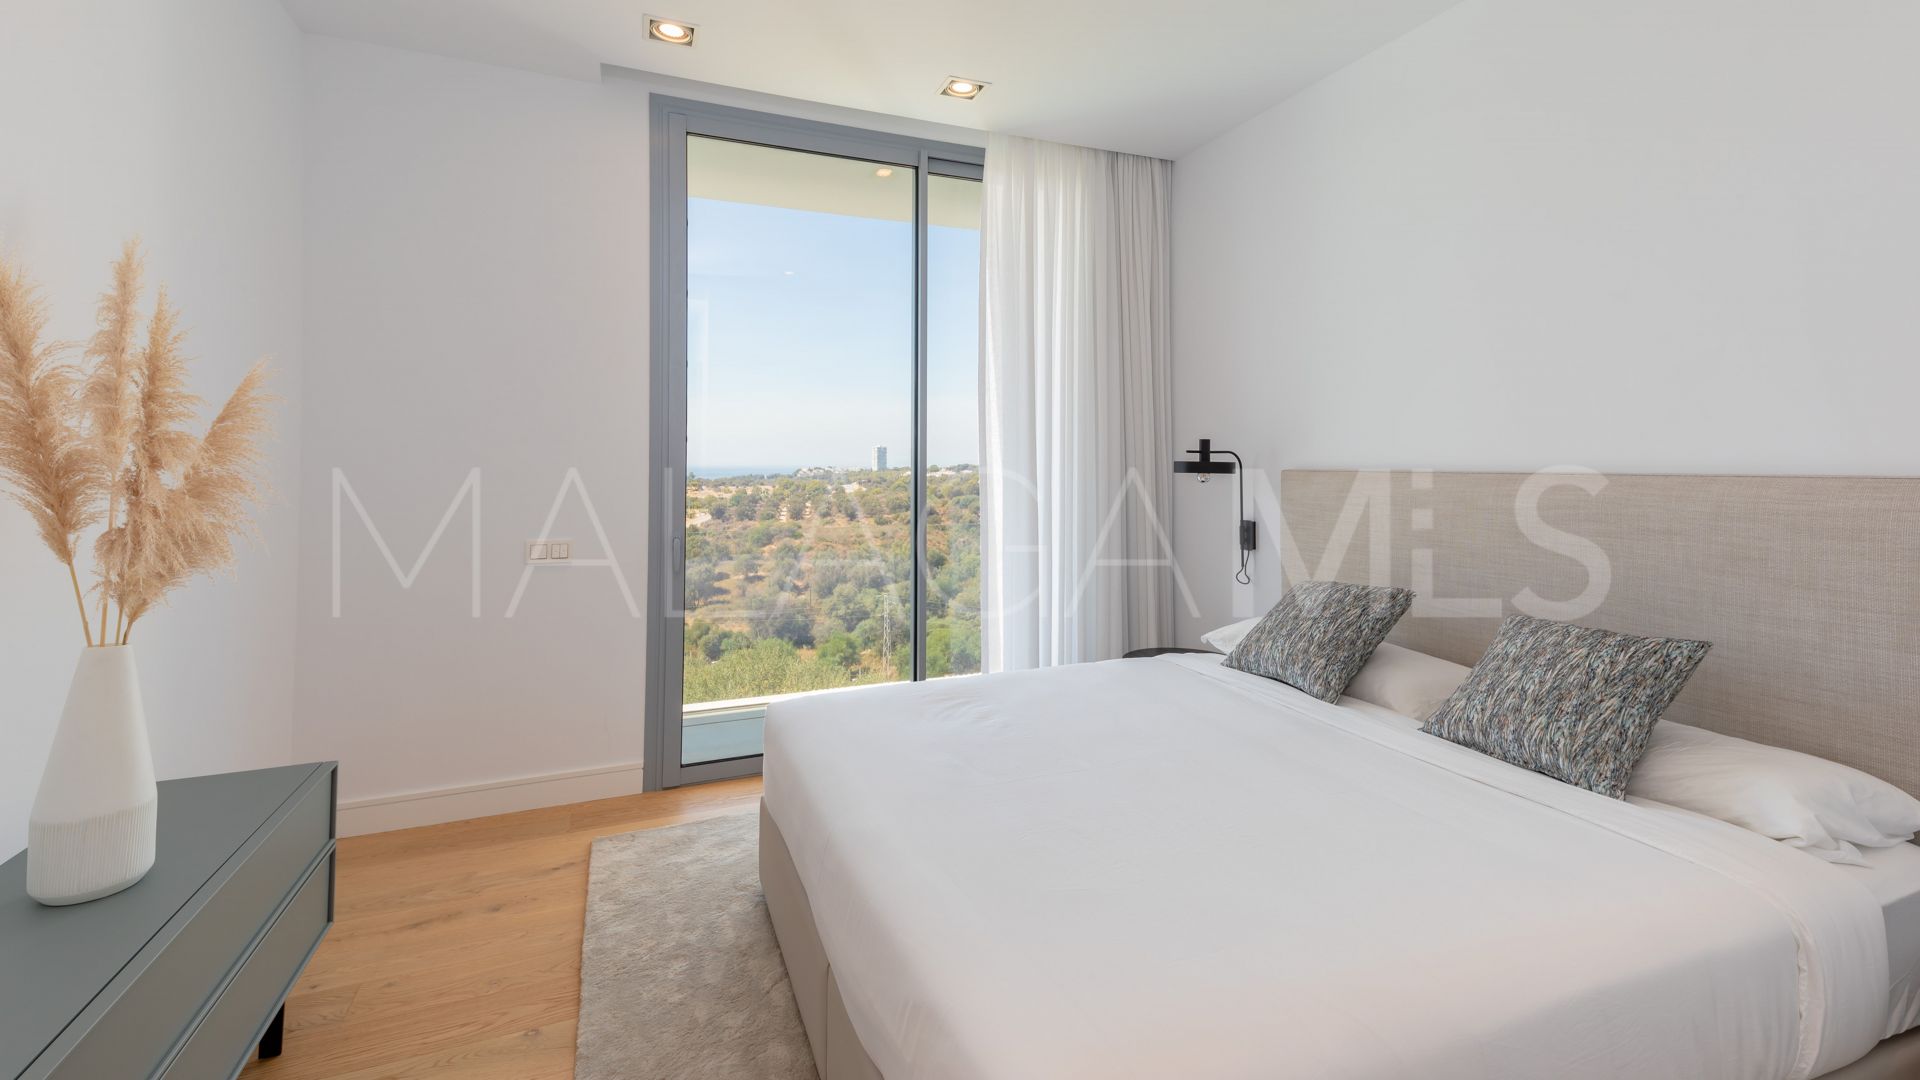 For sale villa in Los Monteros with 5 bedrooms